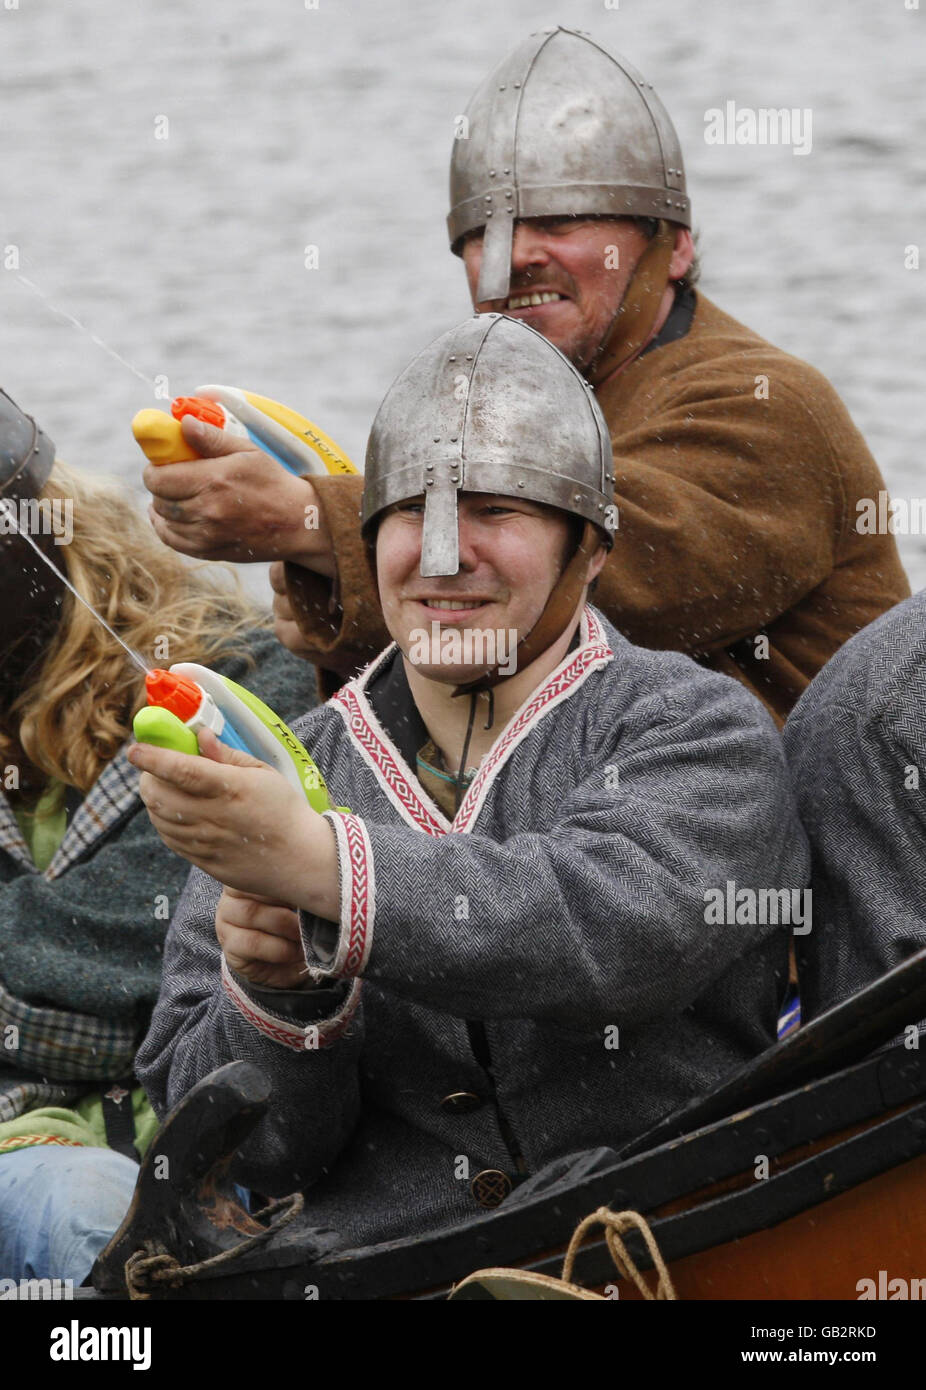 Les passionnés du National Living History Festival au Lanark Loch en Écosse refont une scène historique tandis que les Vikings arrivent sur les rives de l'Écosse. Les Vikings sont armés de pistolets à eau. Banque D'Images